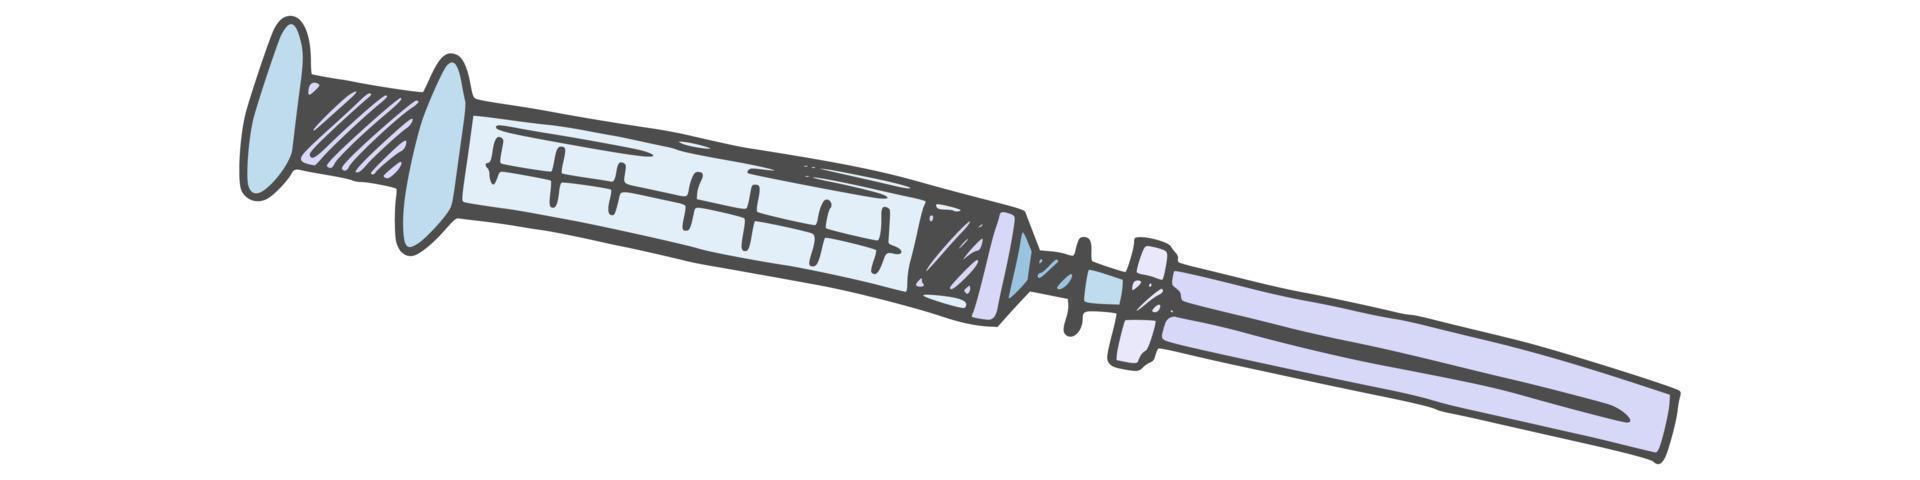 medische spuit voor injecties. doodle afbeelding nieuw vector